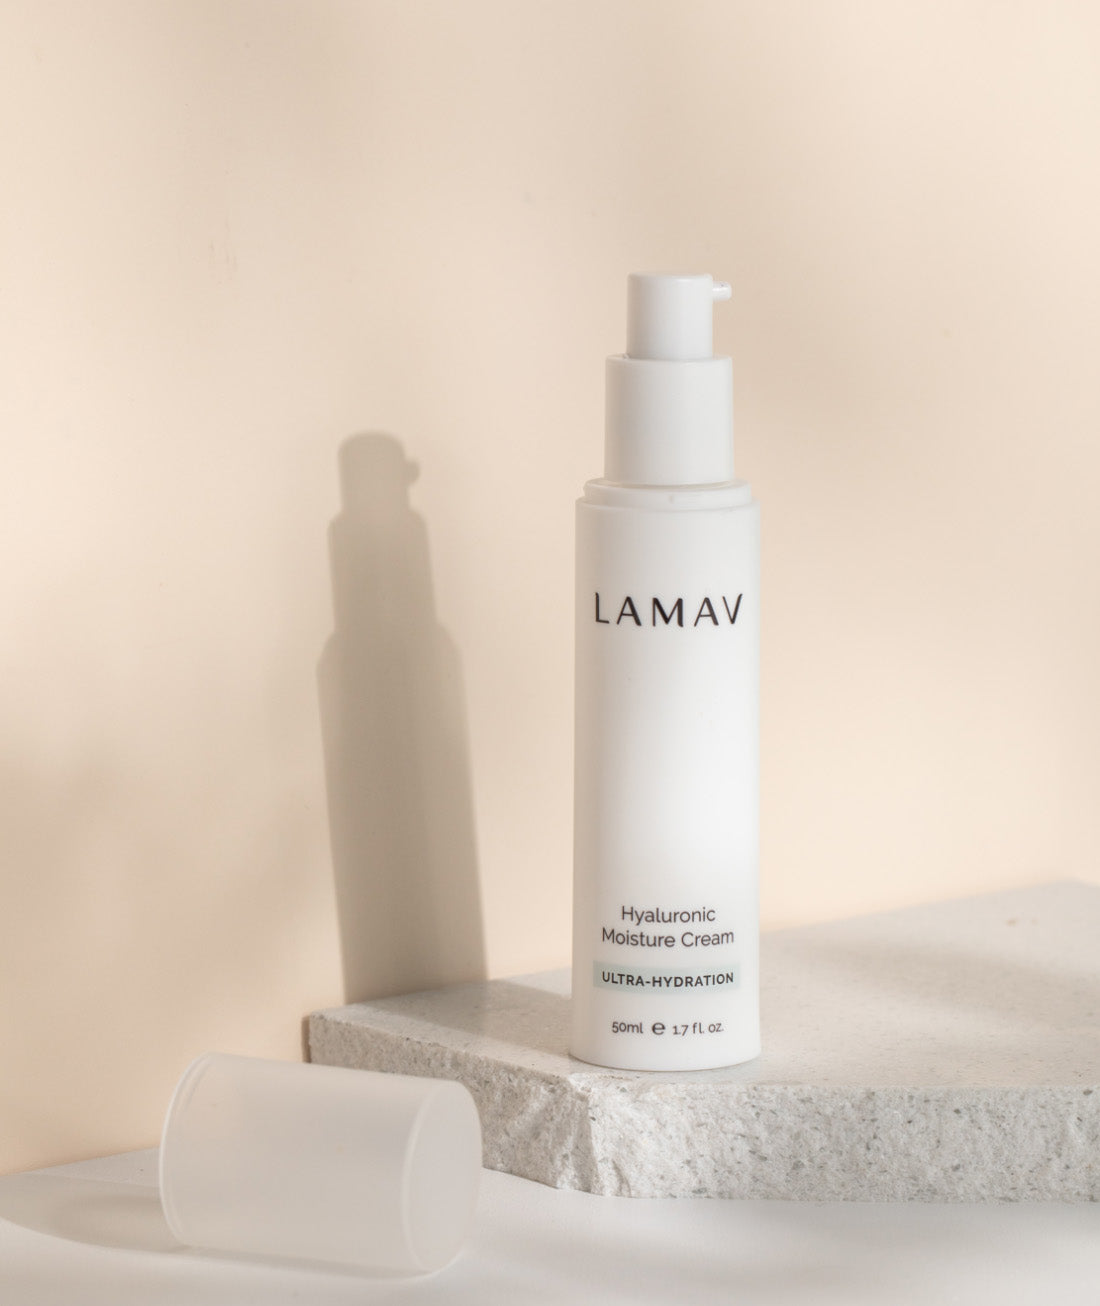 Lamav Hyaluronic Moisture Cream